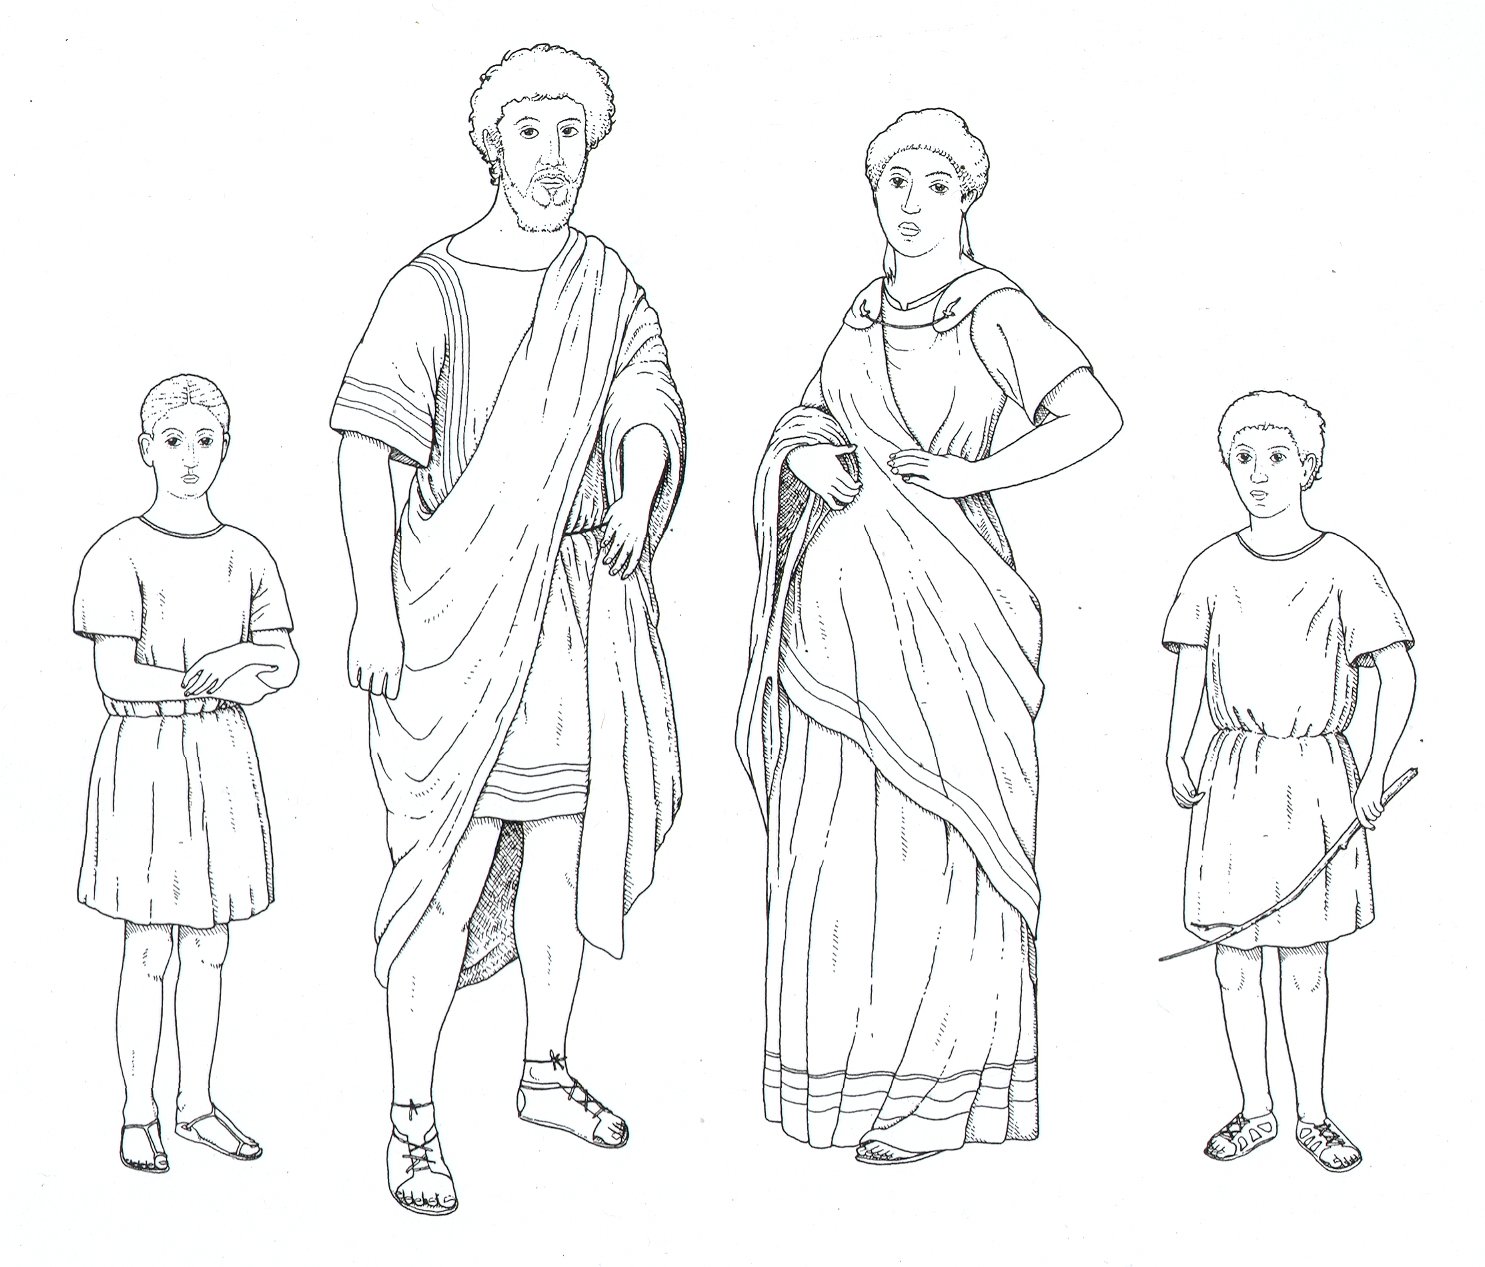 Древний рим иллюстрации 5